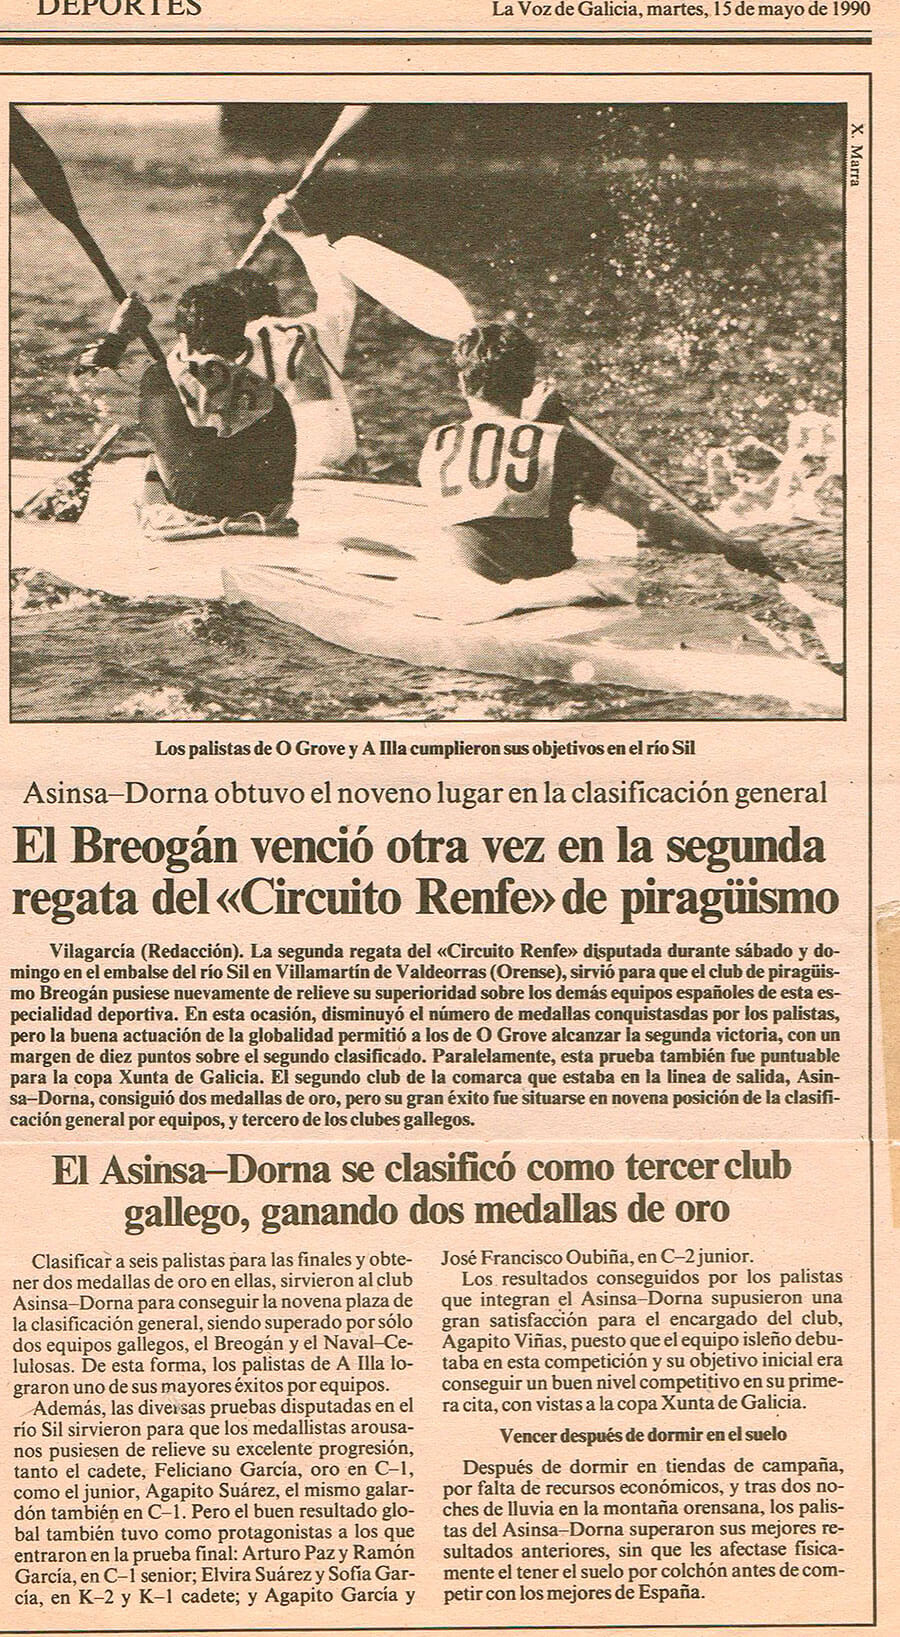 Prensa El Breogán venció otra vez en la segunda regata del Circuito Renfe de piragüismo